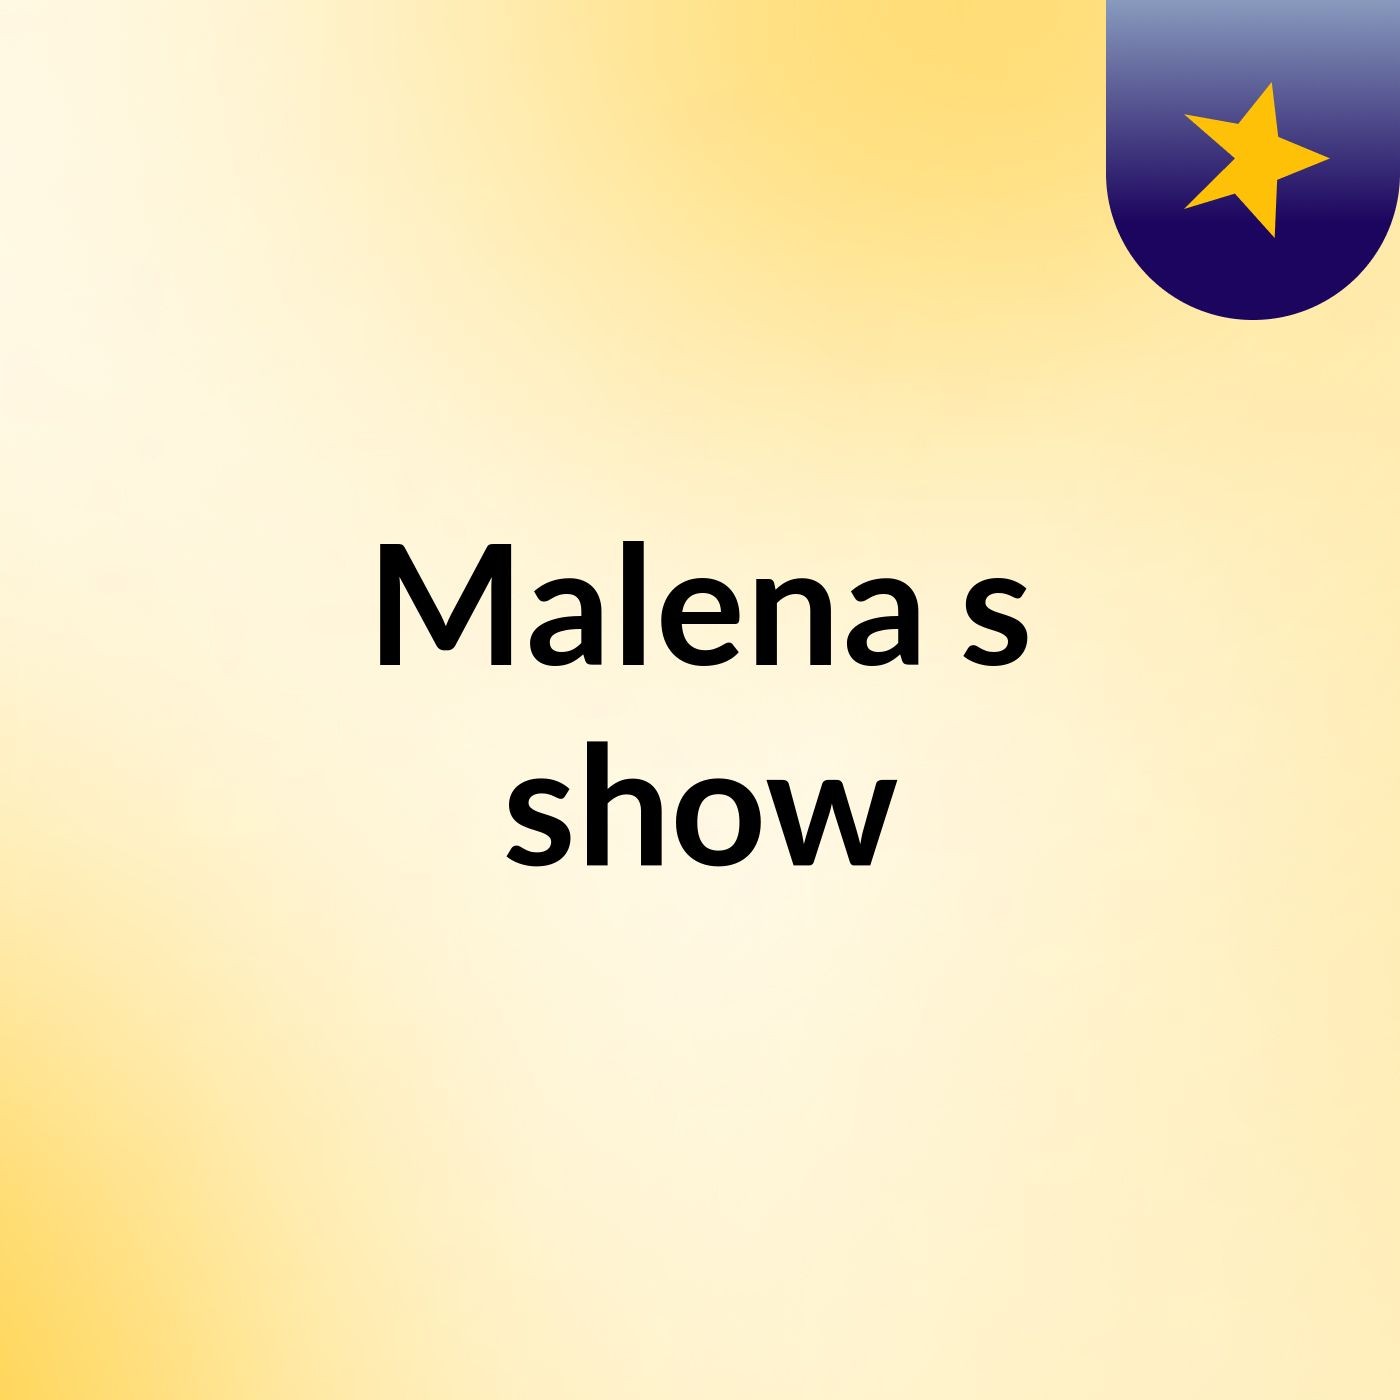 Malena's show